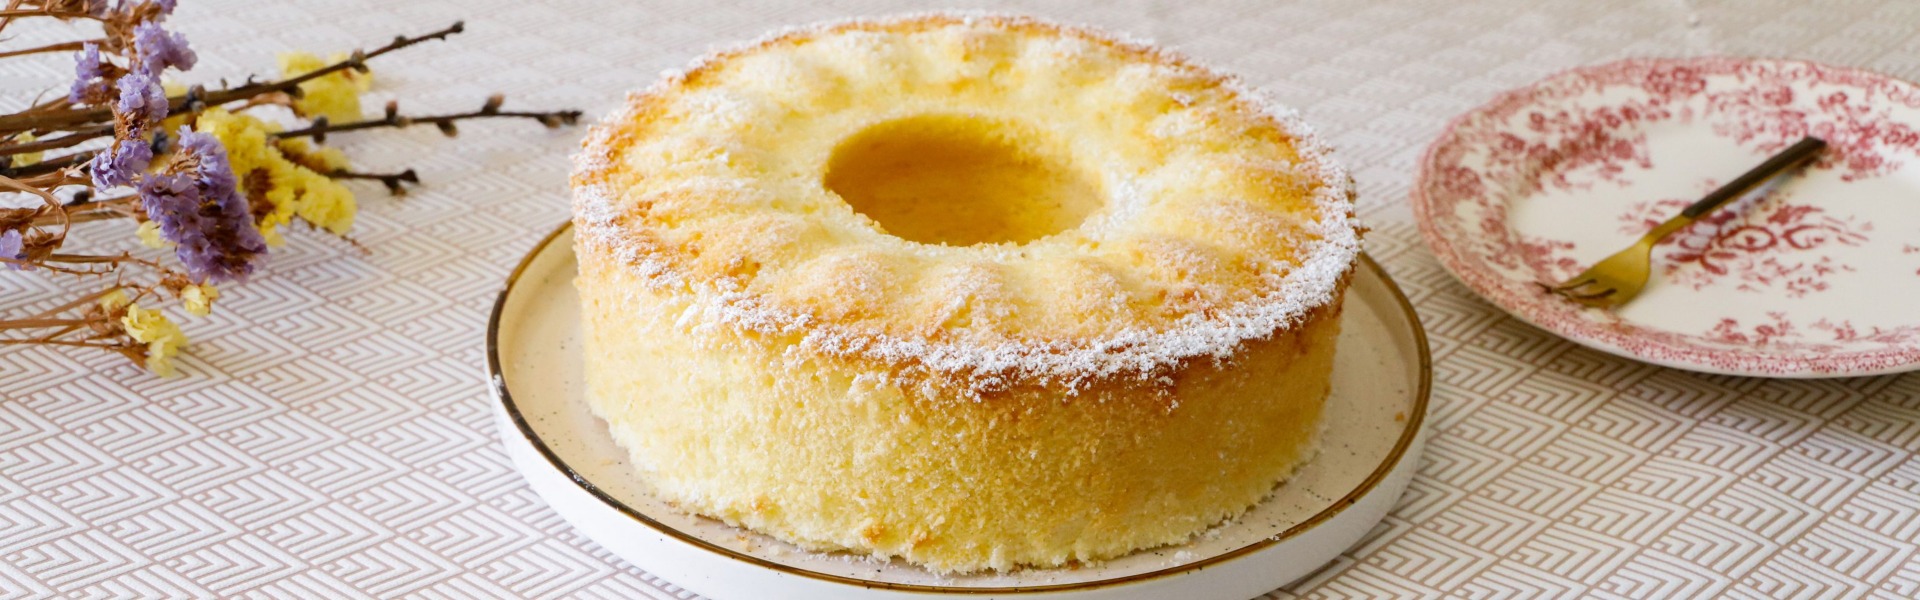 Chiffon cake: la ricetta originale americana per farla alta e soffice